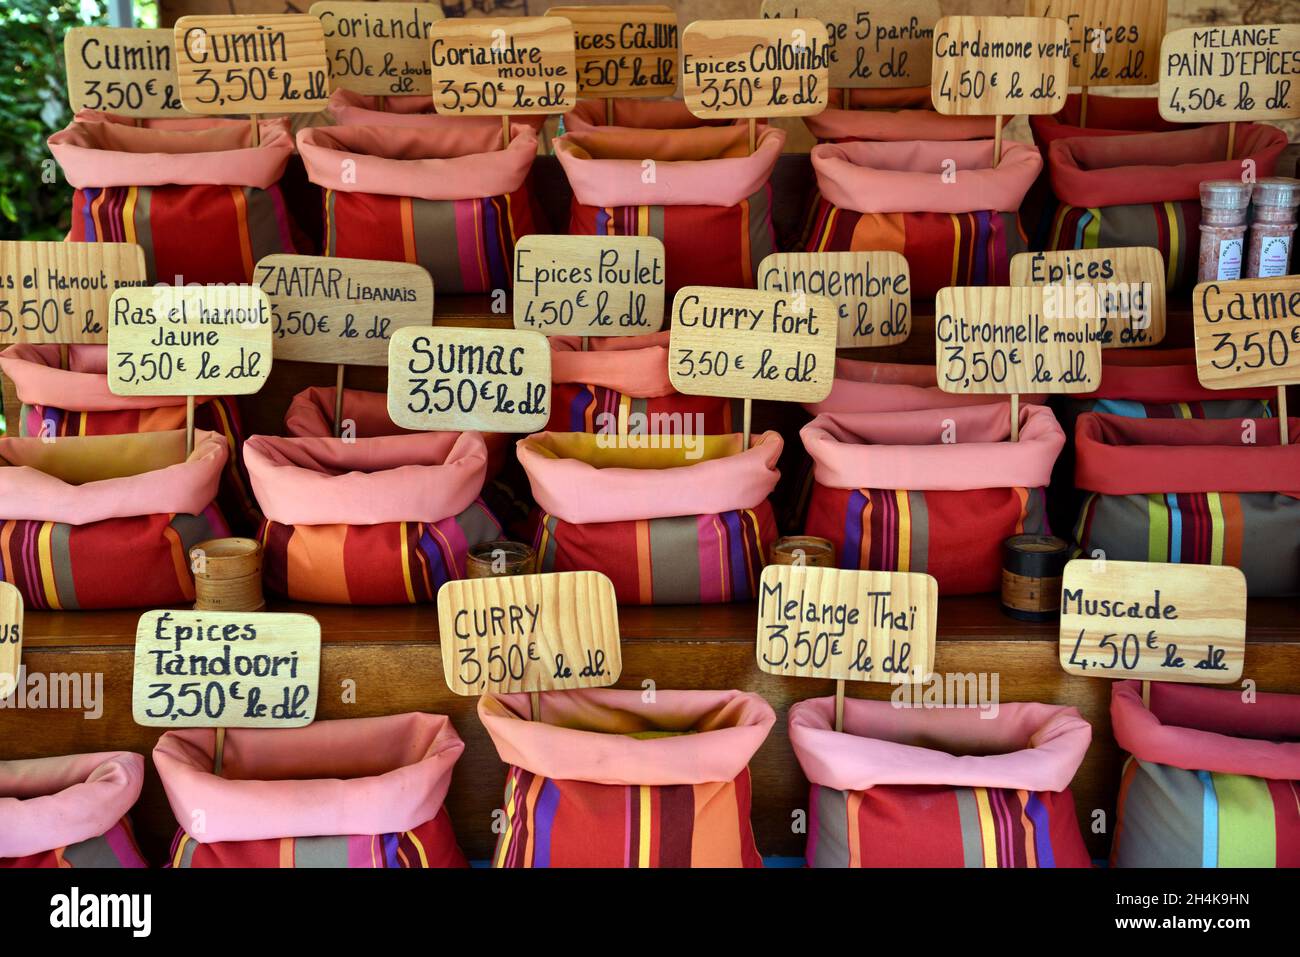 Bunte oder bunte Ausstellung Kräutermarkt und Gewürzmarkt, einschließlich Säcke mit Curry Powder & Mixed Spices, Markttag, Castellane Provence Frankreich Stockfoto